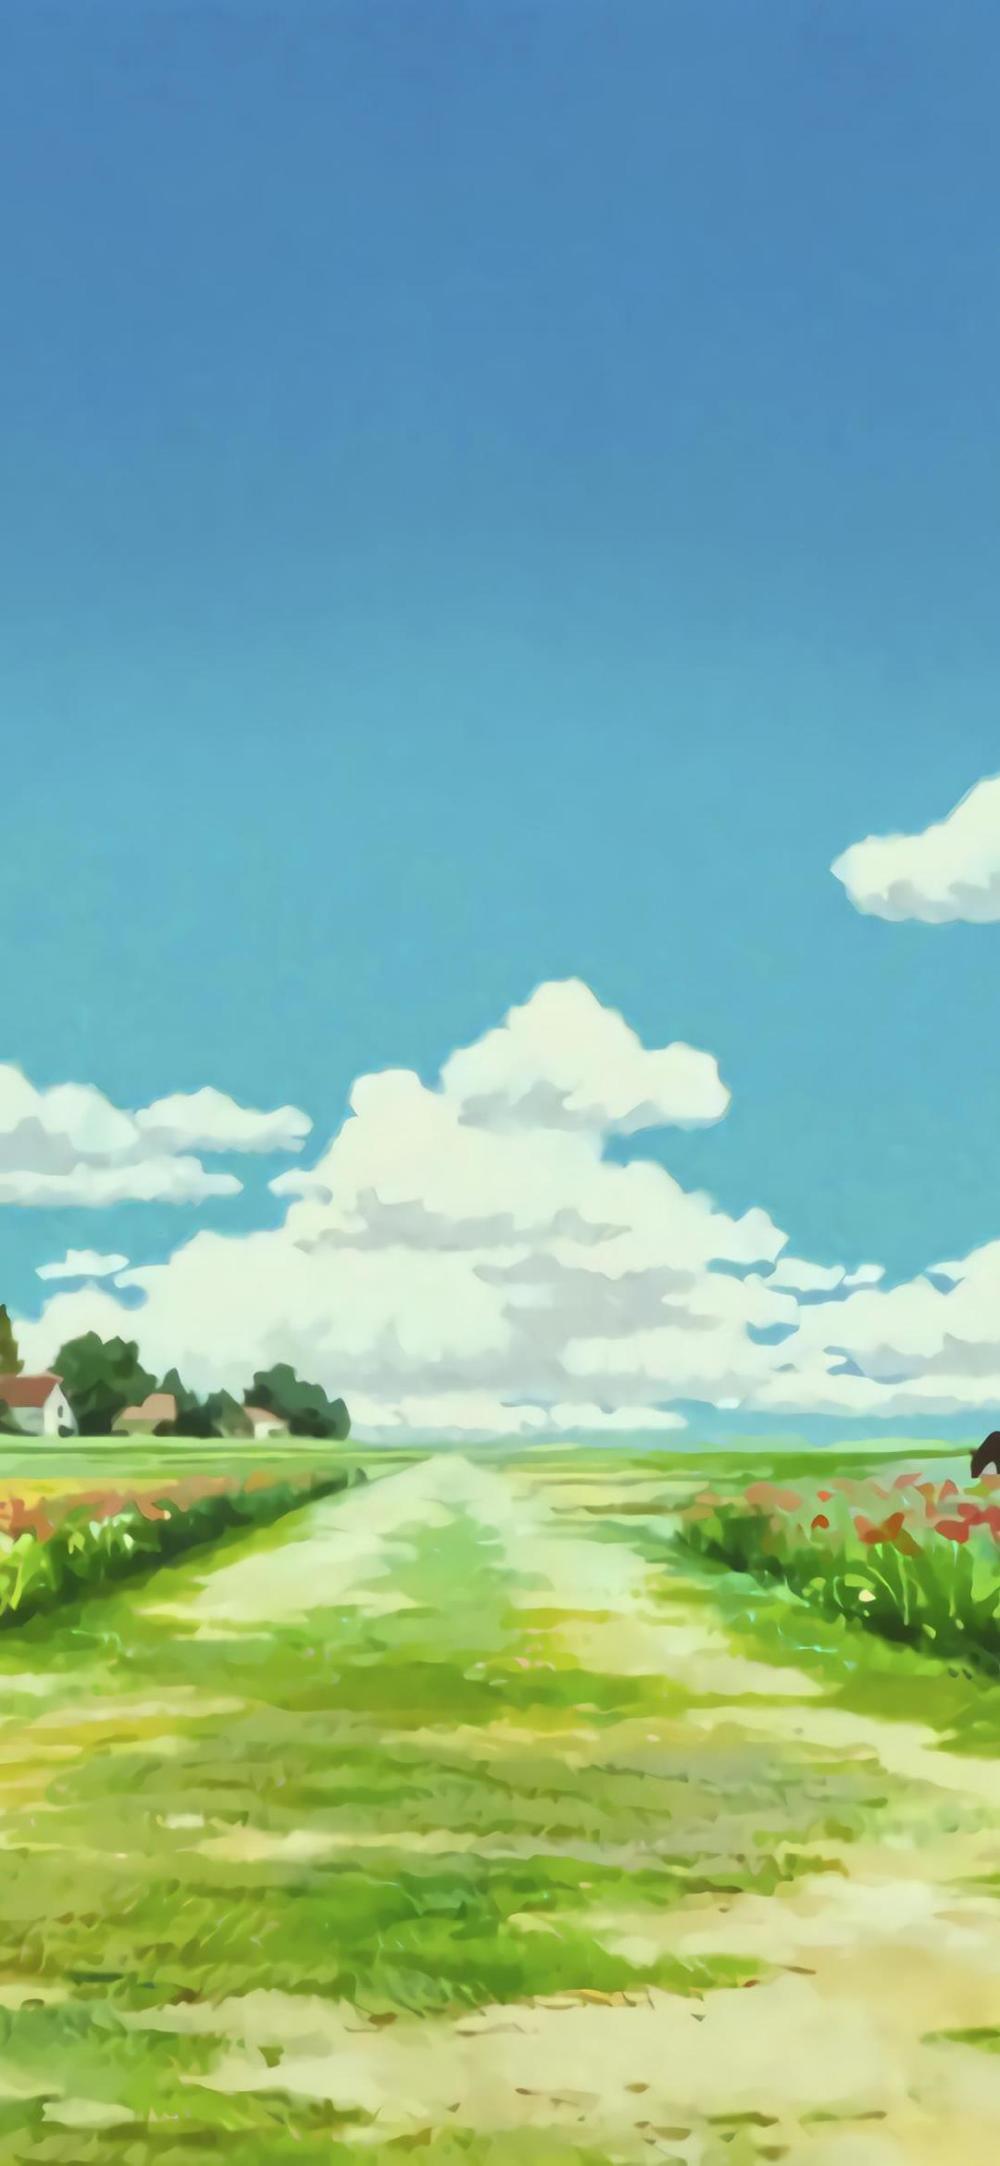 宫崎骏动漫背景图:遇见你的日子是一个好天气